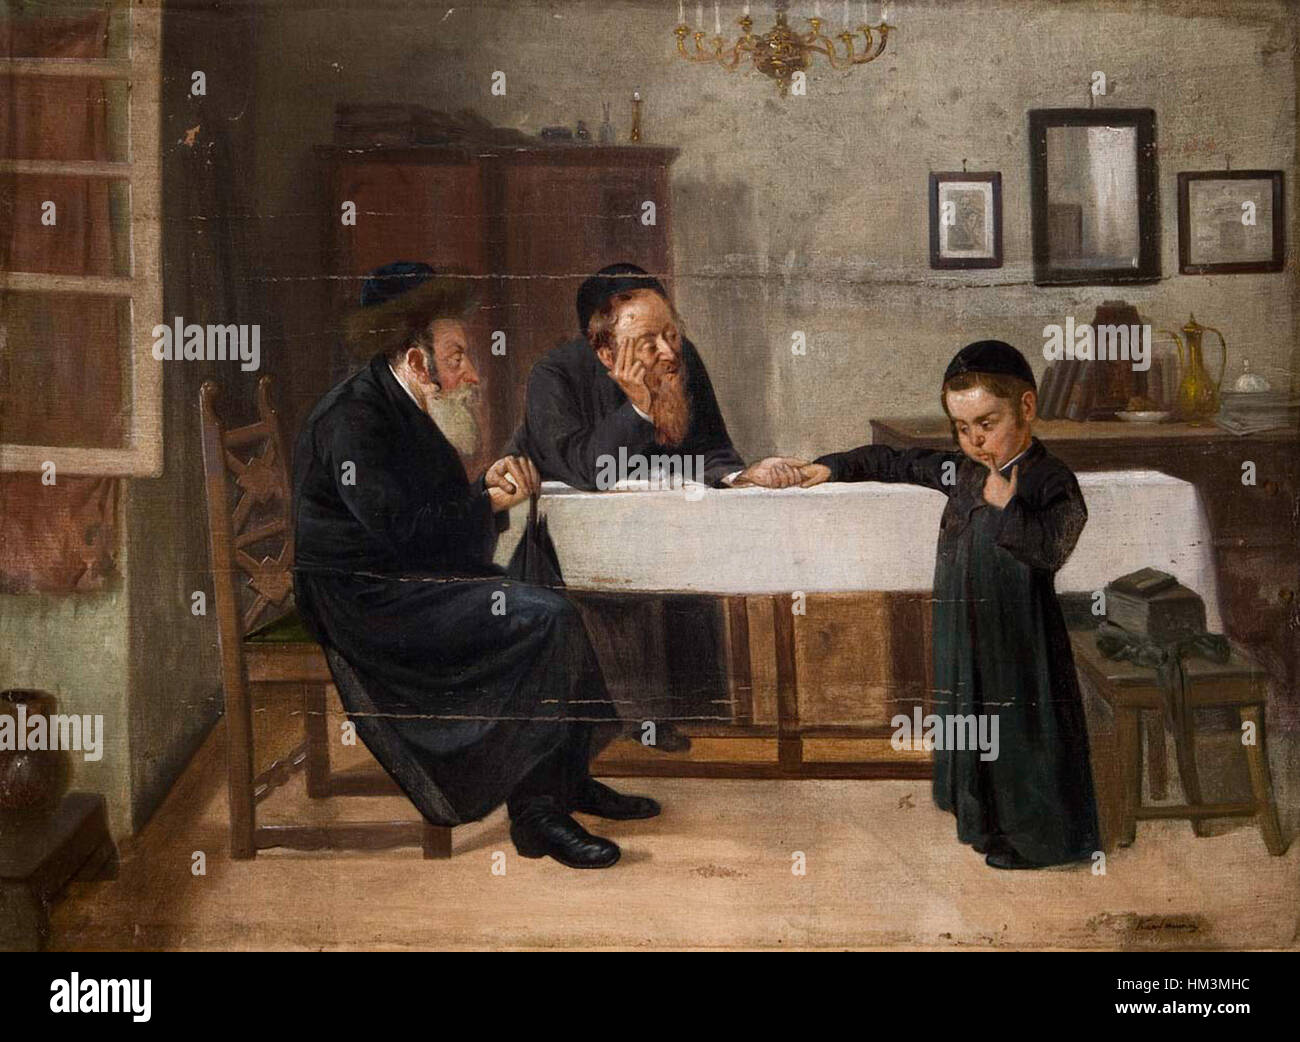 Interieur mit Rabbiner Vater und Sohn Stock Photo